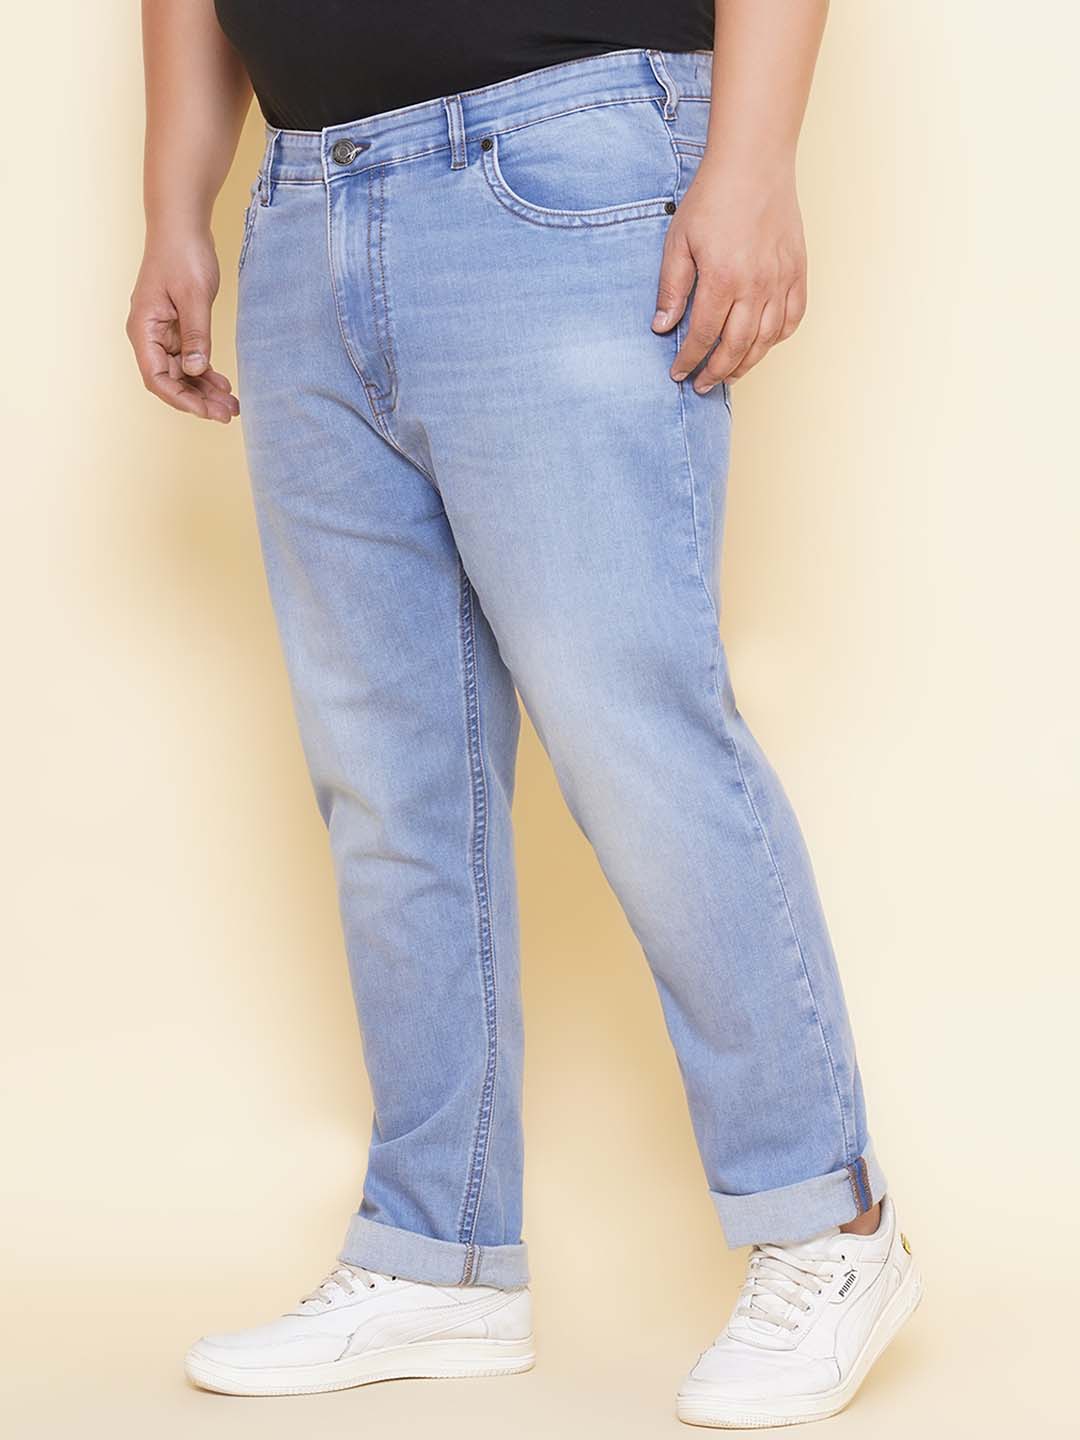 bottomwear/jeans/JPJ12407/jpj12407-4.jpg